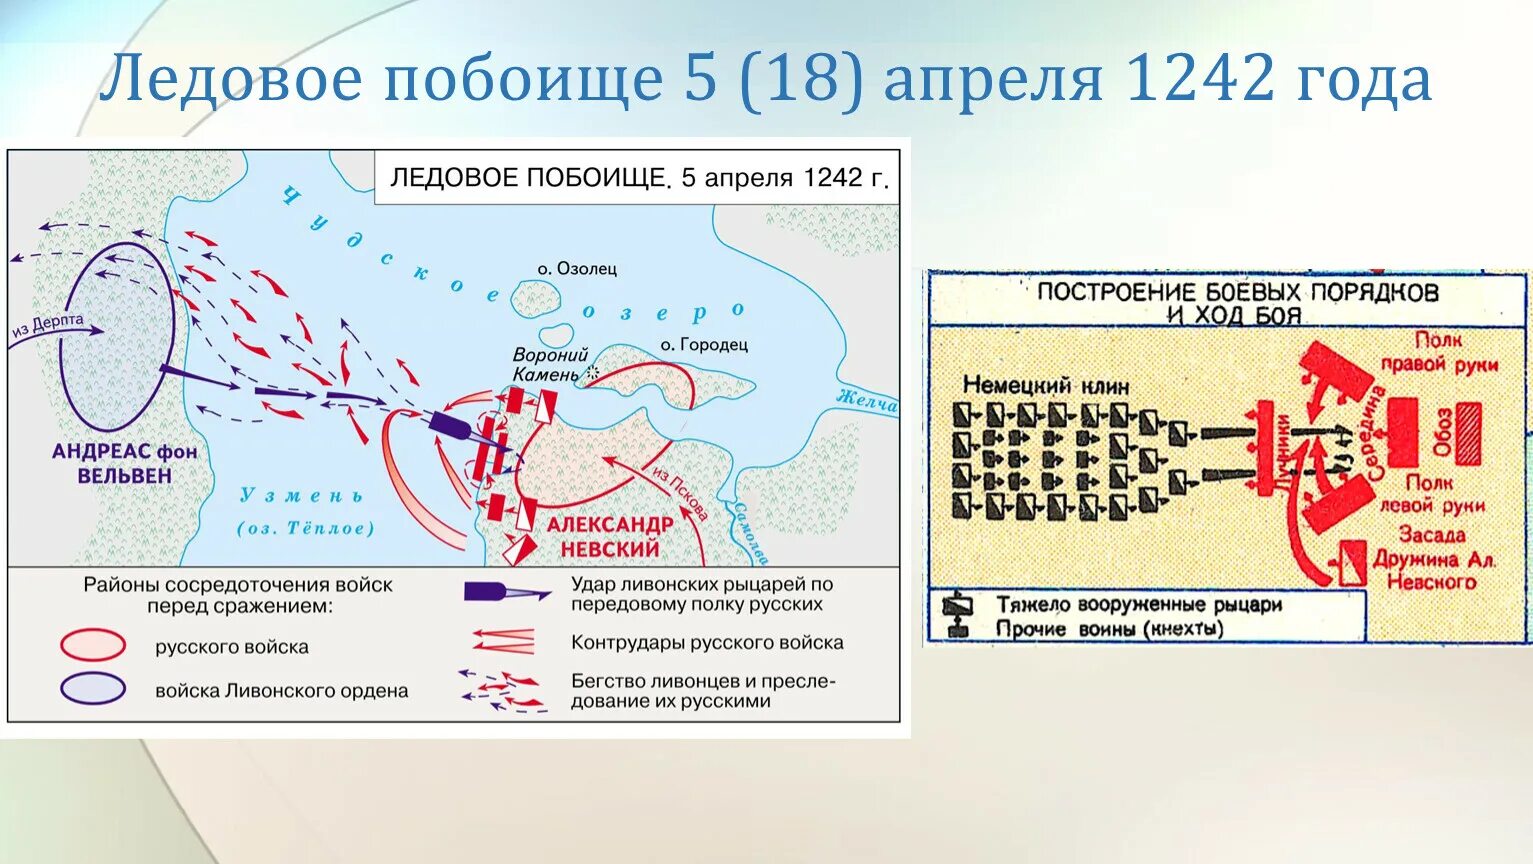 Ледовое побоище построение войск. Битва на Чудском озере схема битвы. Битва на Чудском озере 1242 год Ледовое побоище карта.